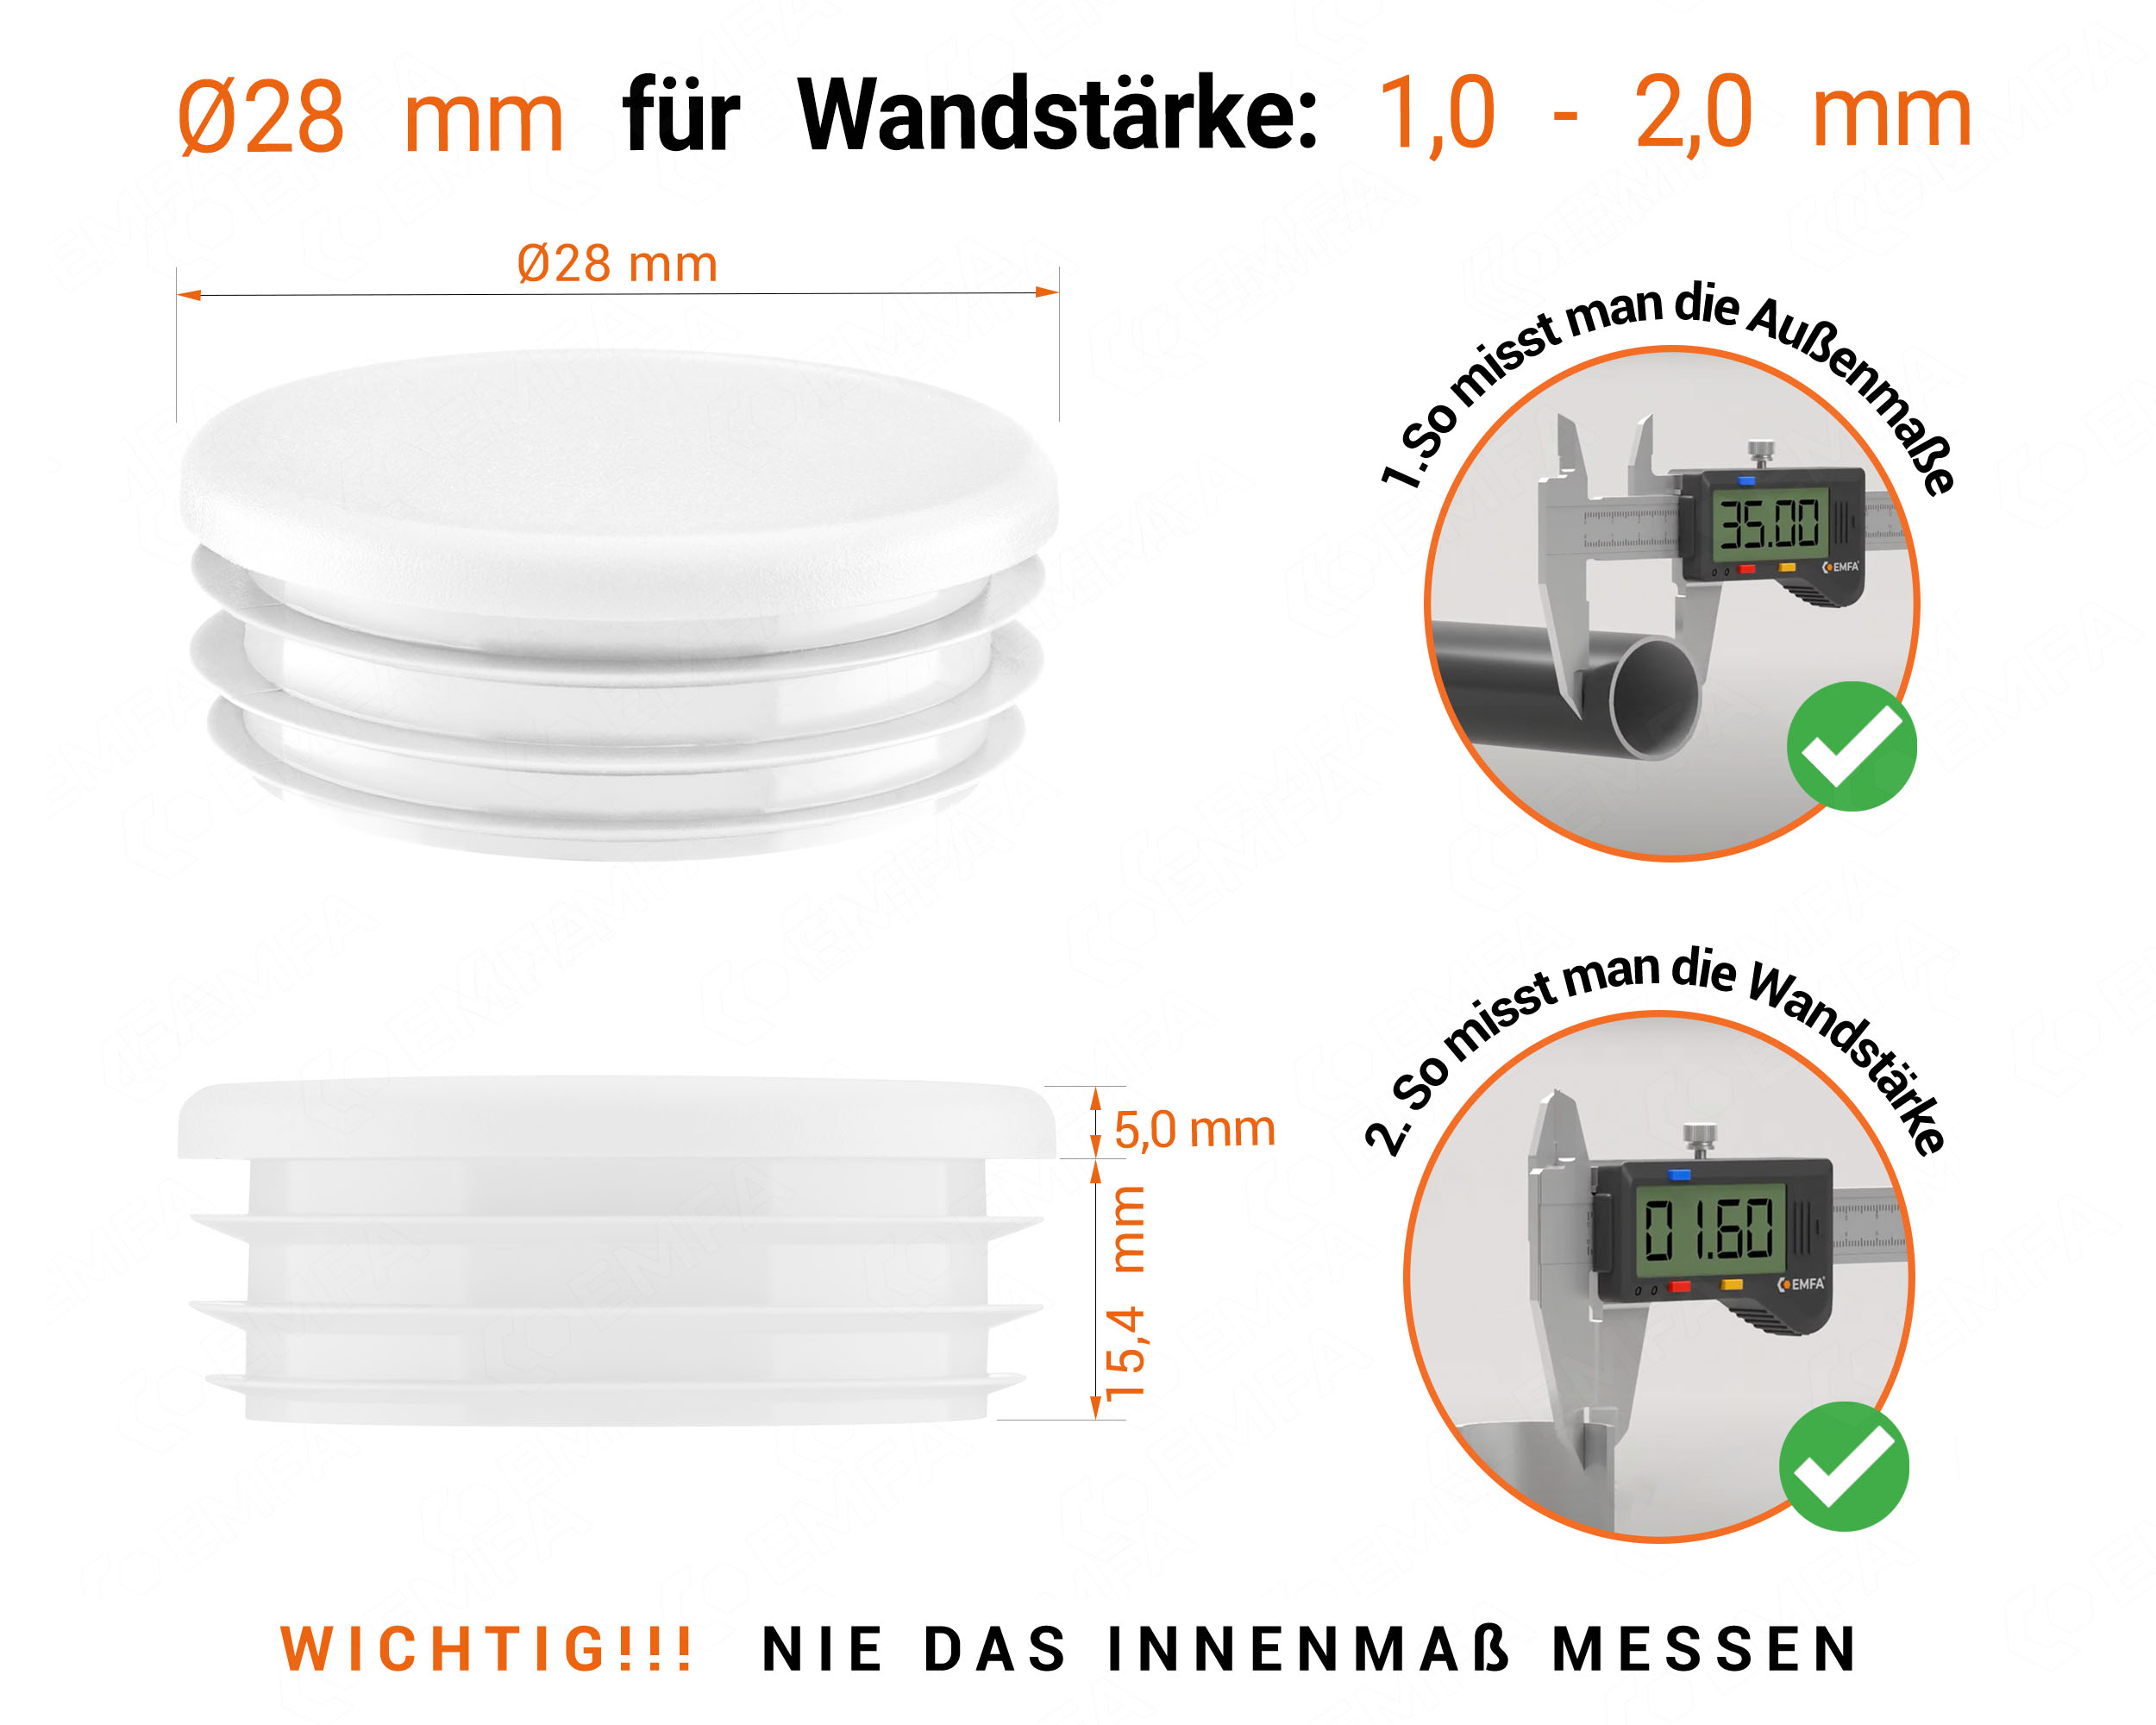 Weiße Endkappe für Rundrohre in der Größe 28 mm mit technischen Abmessungen und Anleitung für korrekte Messung